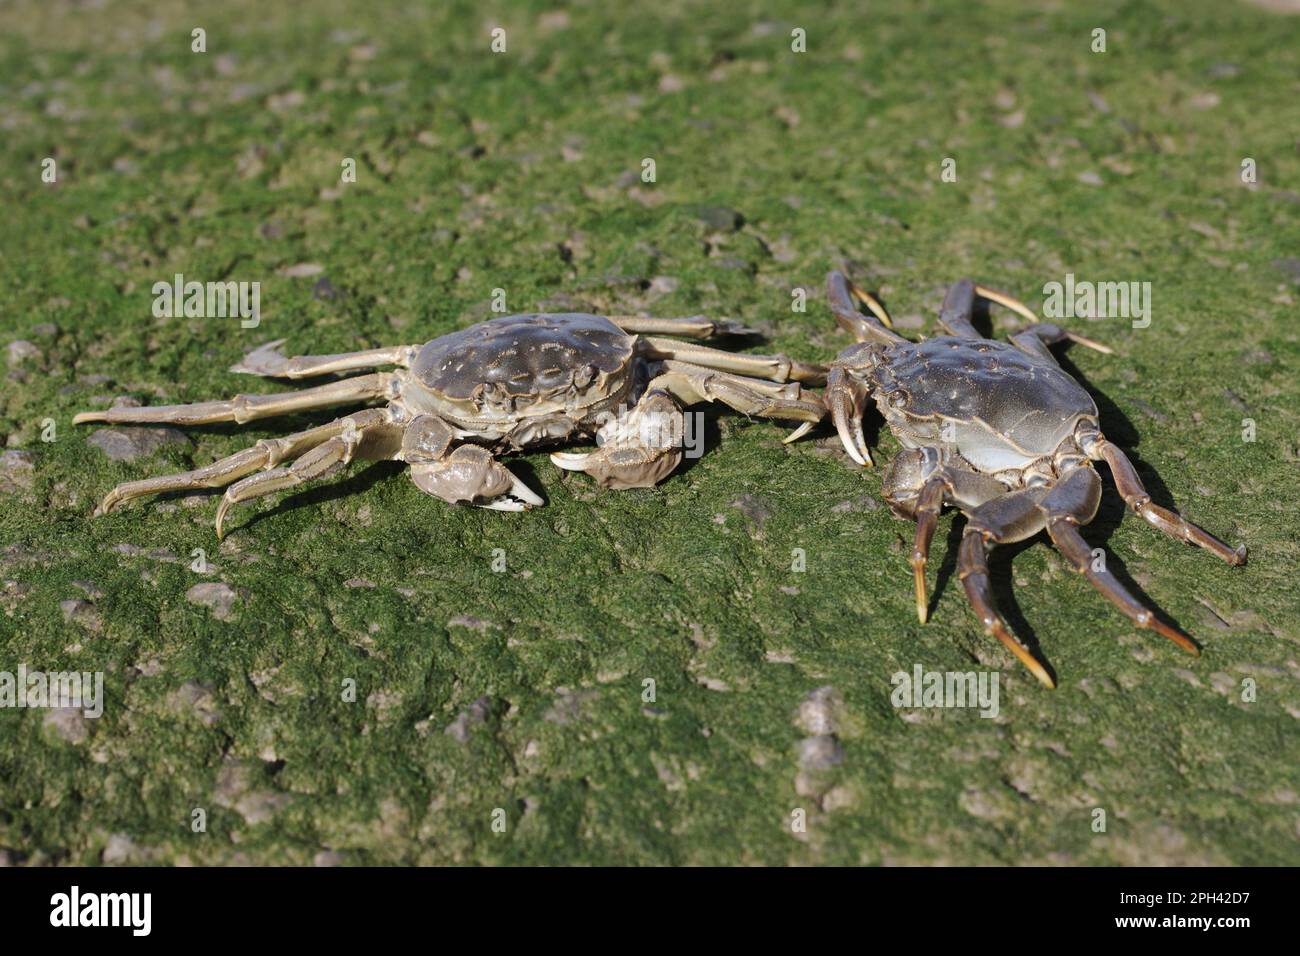 Le crabe chinois Mitten (Eriocheir sinensis) introduit des espèces, deux adultes, sur la rive, la Tamise, Londres, Angleterre, Royaume-Uni Banque D'Images